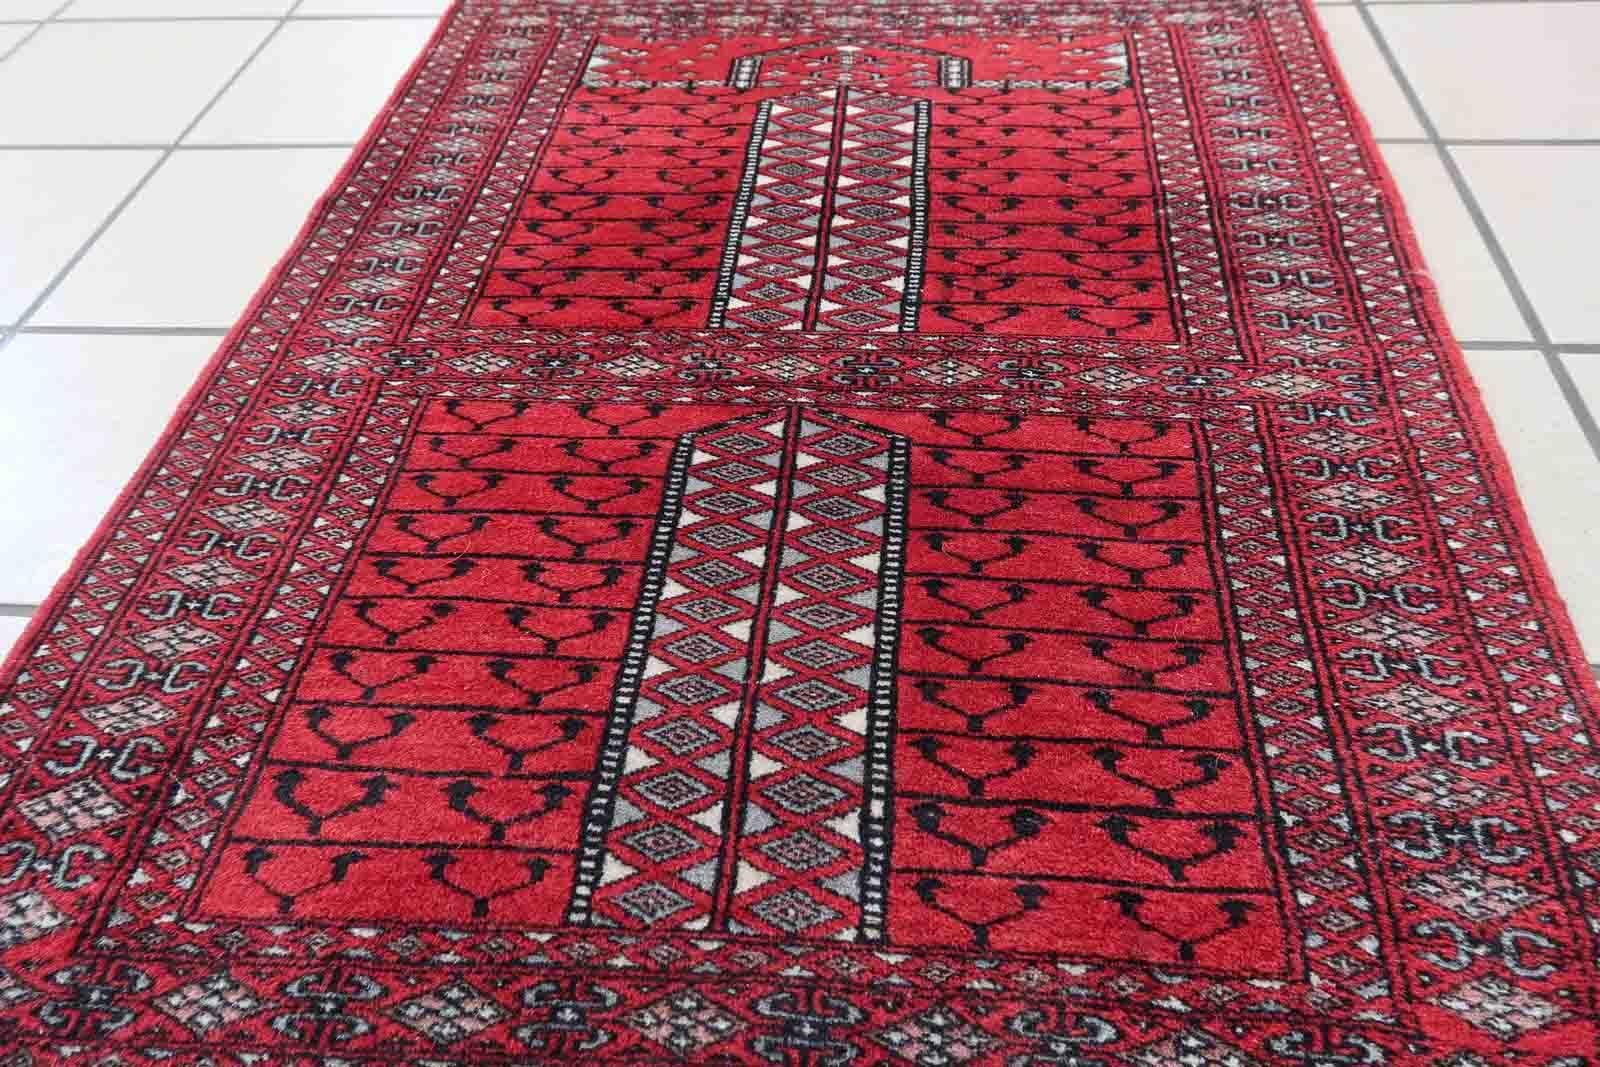 Handgefertigter roter Vintage-Gebetsteppich aus Pakistan im Lahore-Stil. Der Teppich ist in gutem Originalzustand, er stammt vom Ende des 20. Jahrhunderts.

-Zustand: original gut,

-Umgebung: 1970er Jahre,

-Größe: 2' x 2.8' (64cm x